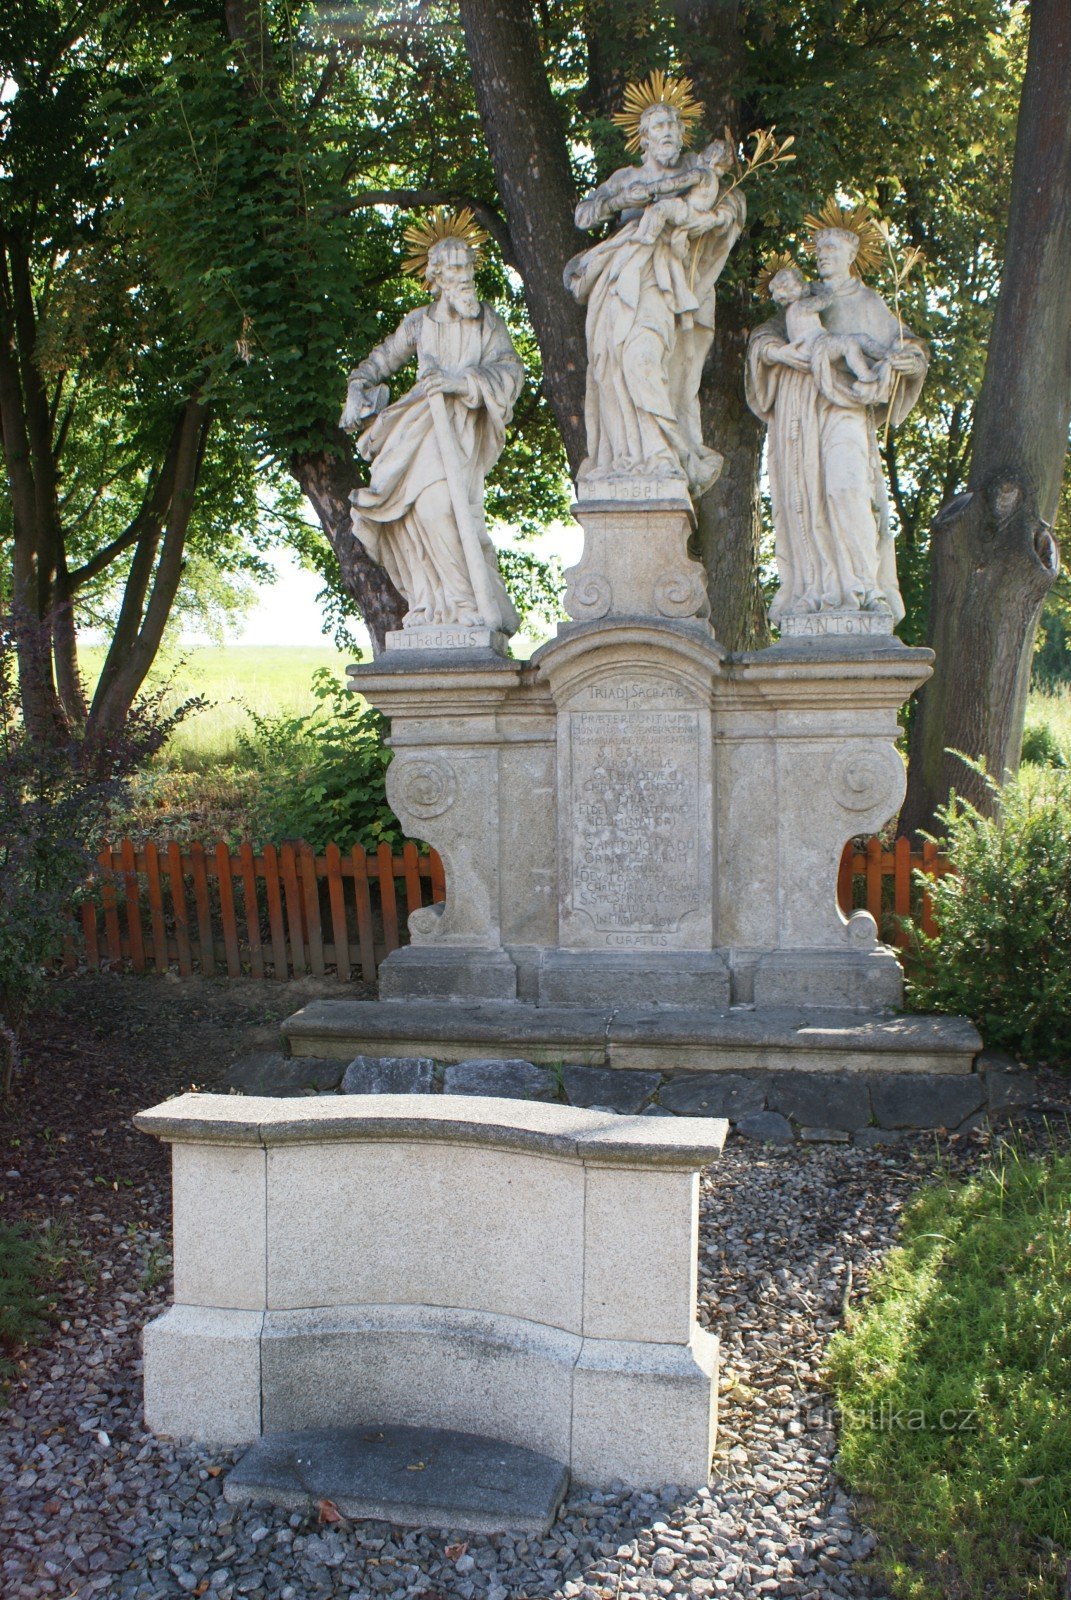 Kájov – scultura barocca (scultura tripla) di S. Giuseppe, S. Taddeo e S. Antonio da Padova